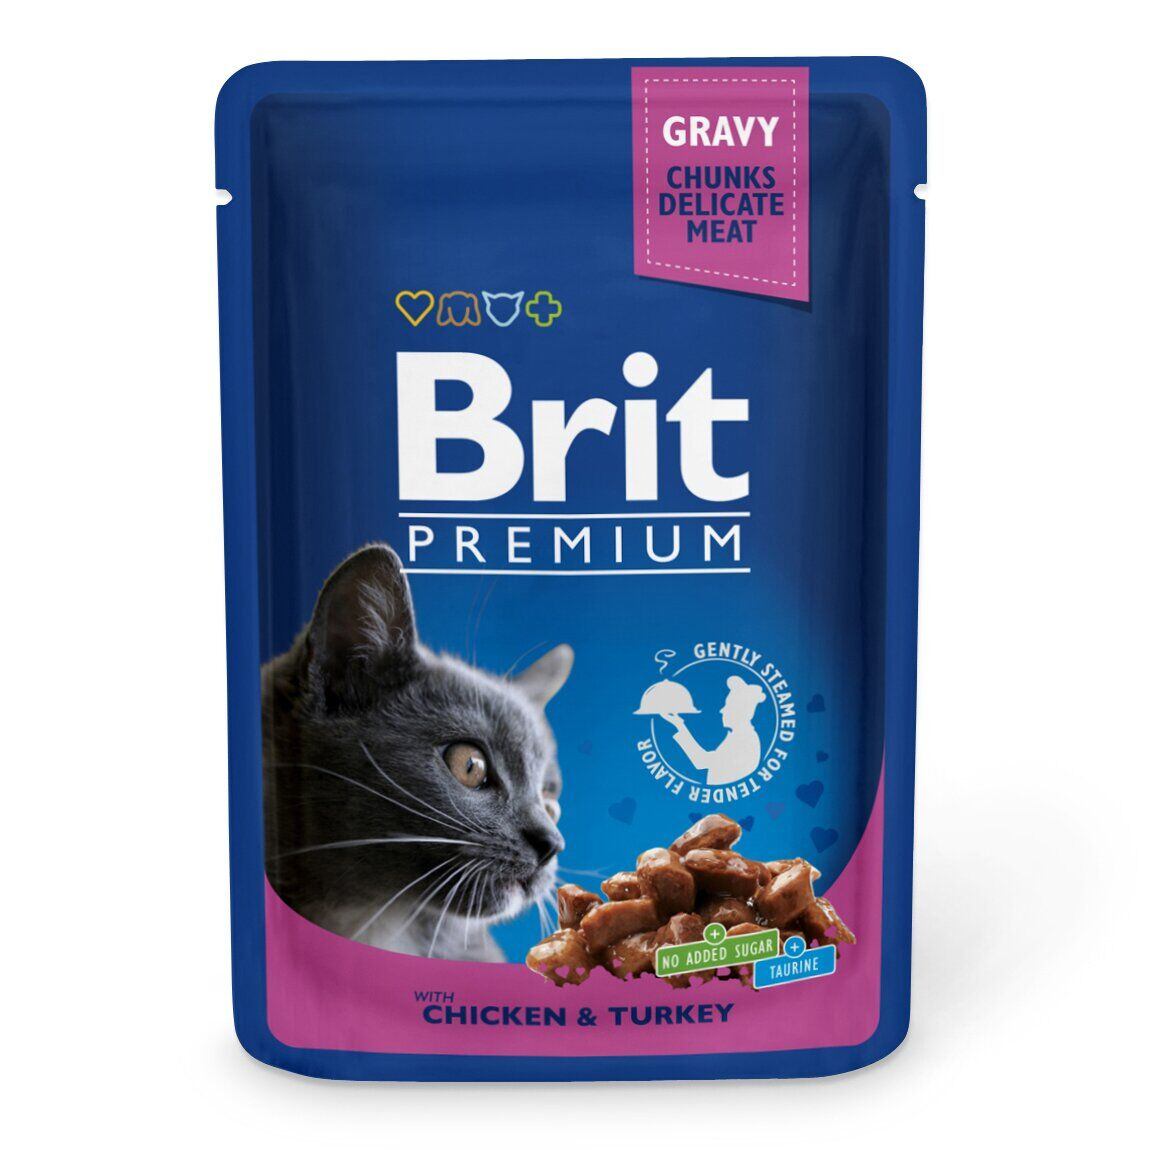 Влажный корм для кошек Brit Premium Cat pouch, с курицей и индейкой, 100 г - фото 1